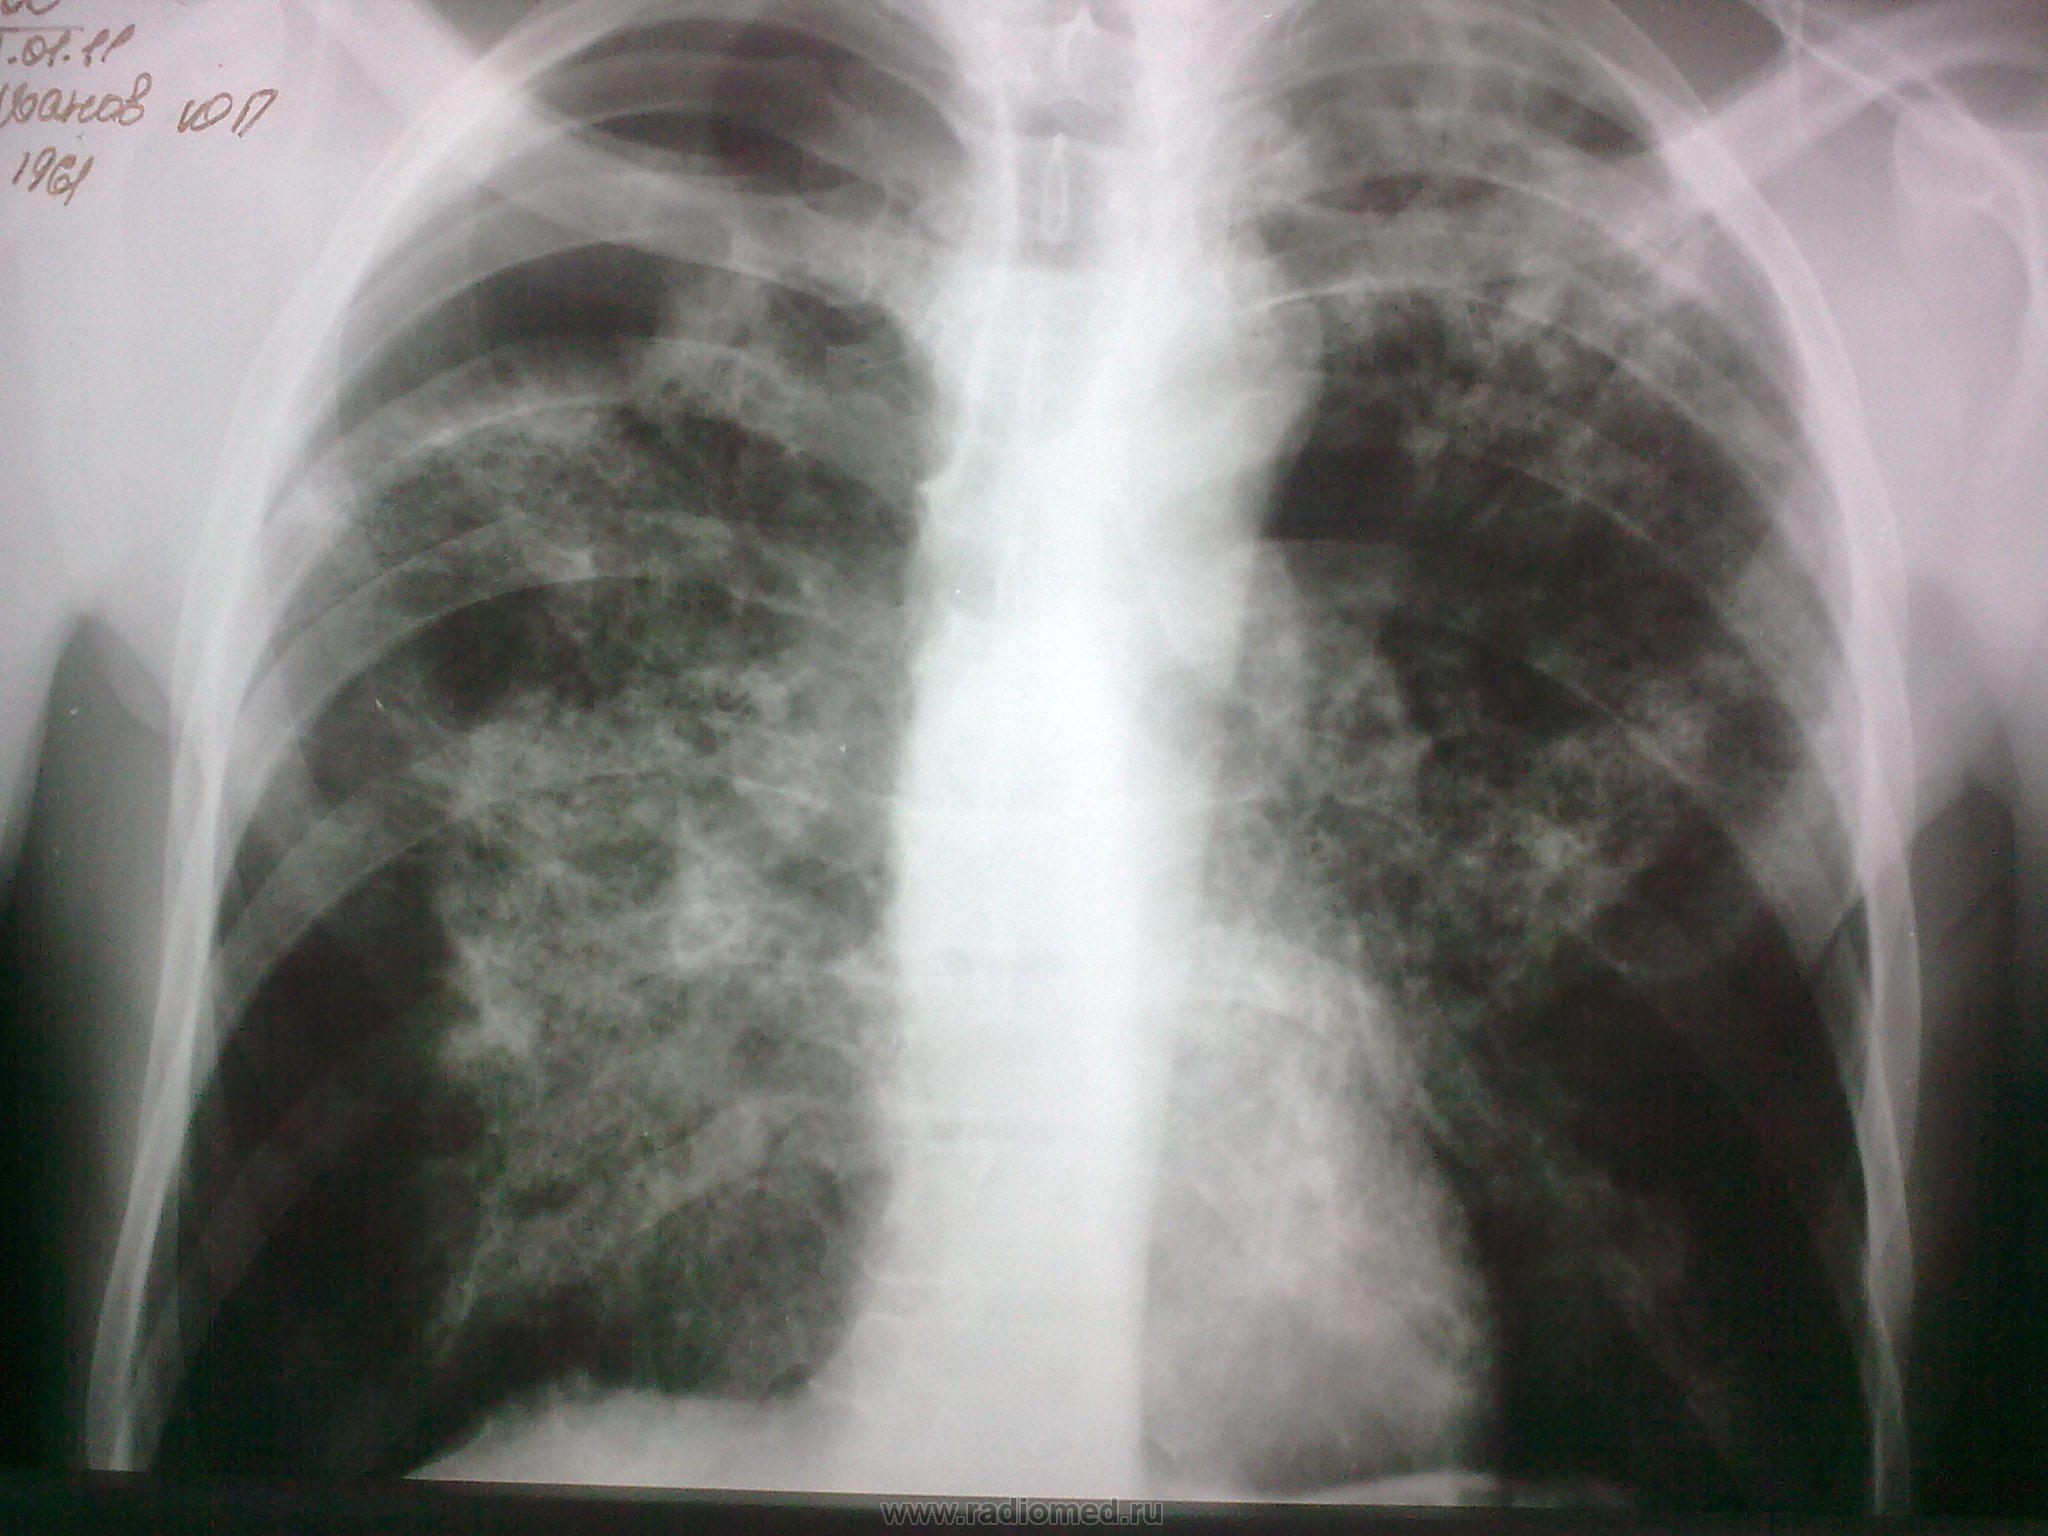 Пневмония снимки легких флюорография